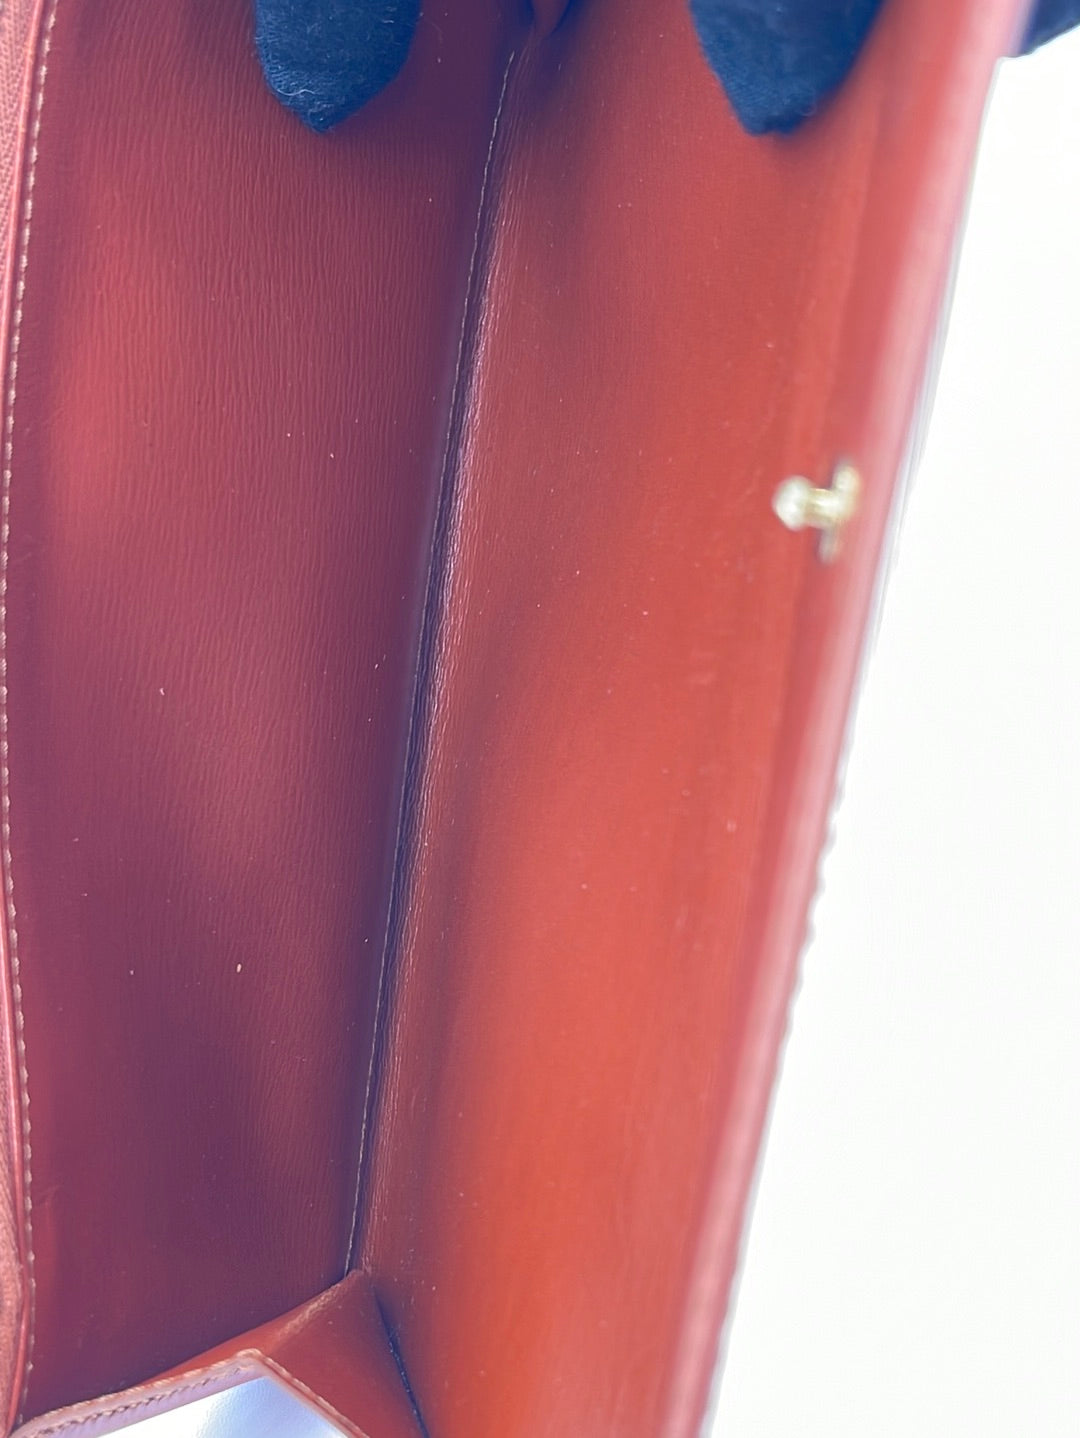 Louis Vuitton Orange Epi Sarah Wallet (CA2104) – Luxury Leather Guys